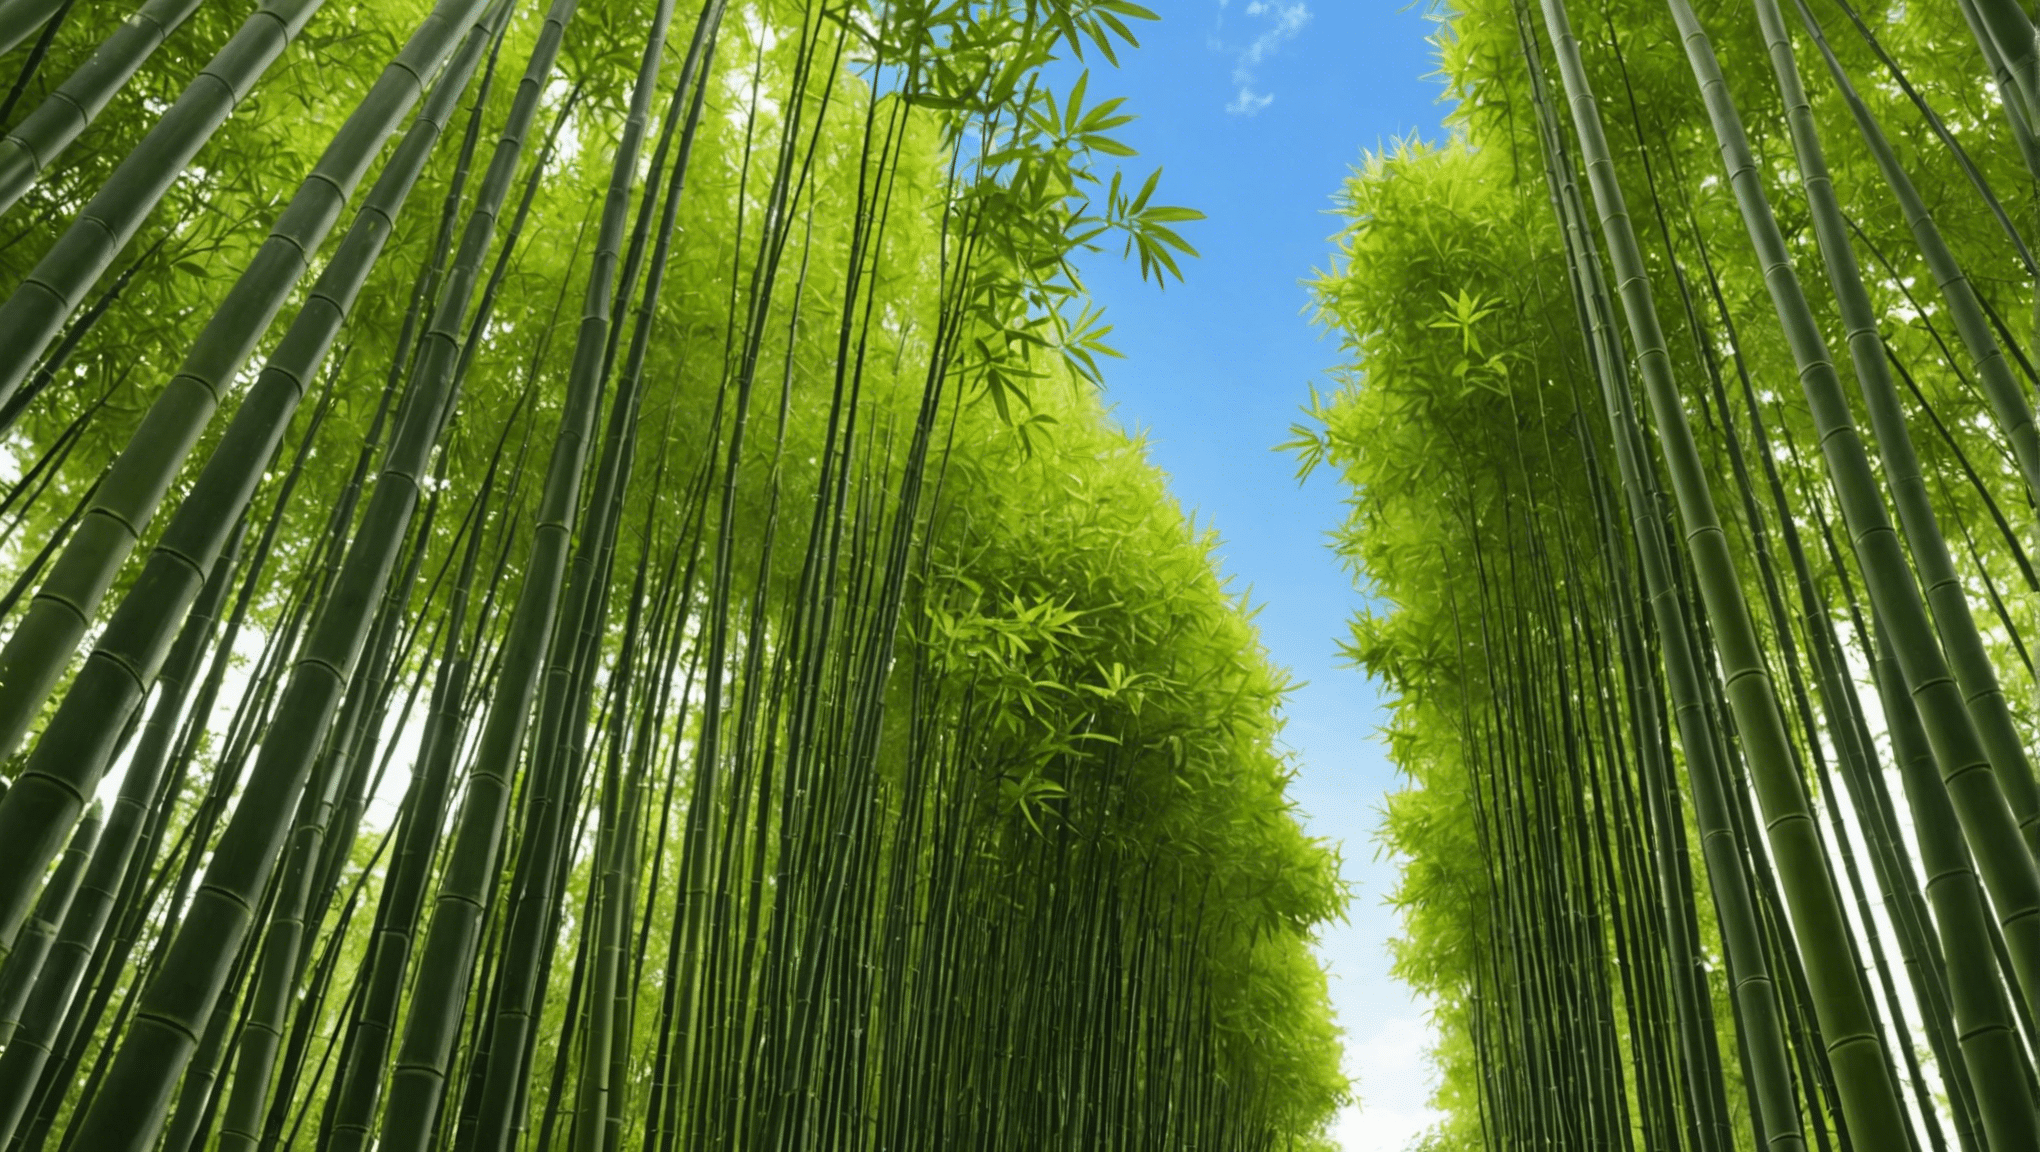 Conozca el papel de las semillas de bambú en la promoción de la sostenibilidad ecológica y la conservación del medio ambiente.